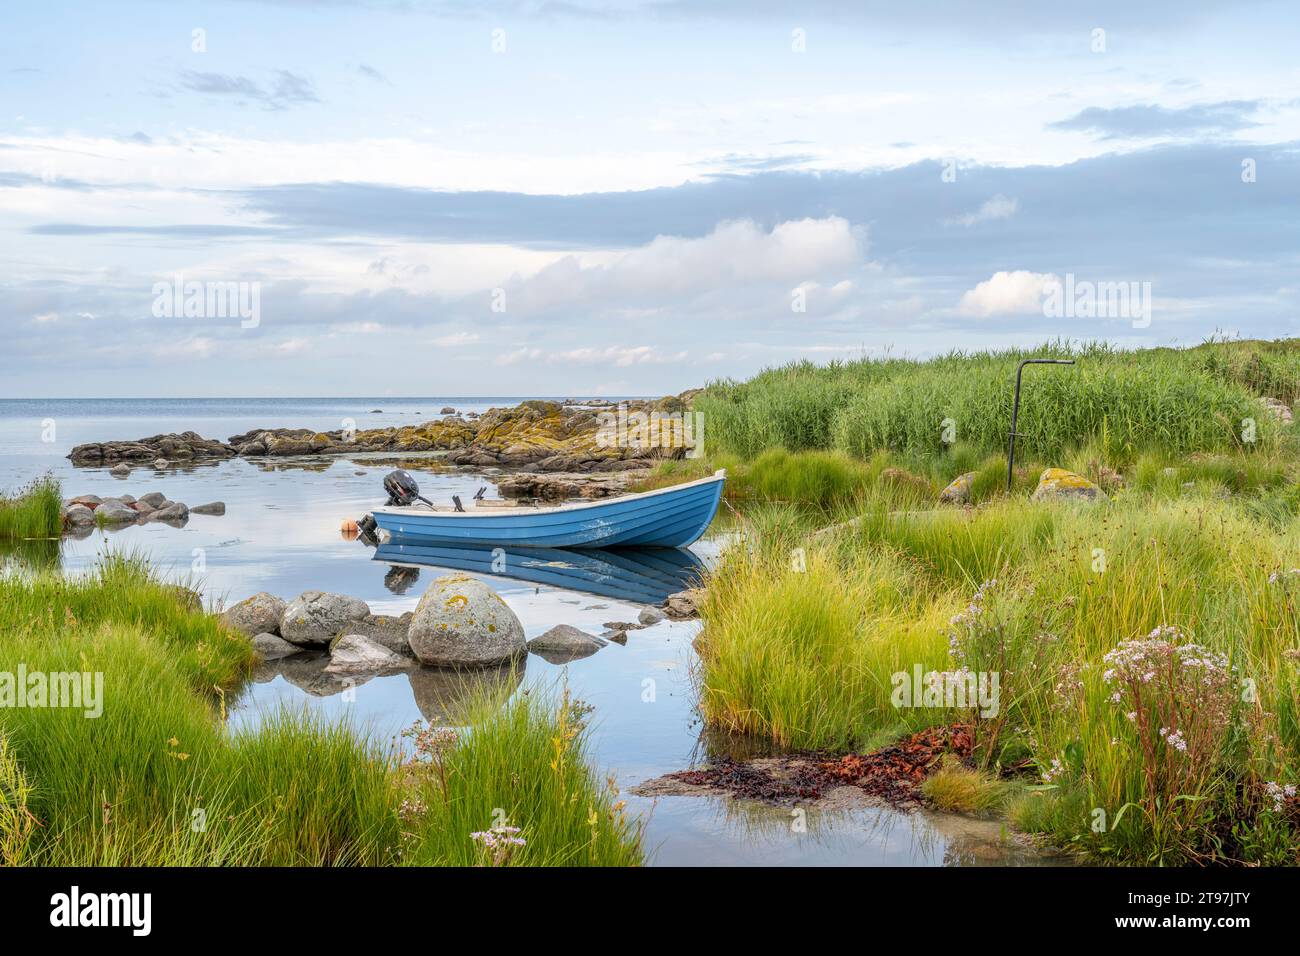 Danemark, Bornholm, Svaneke, bateau à moteur amarré sur la côte herbeuse de l'île Banque D'Images